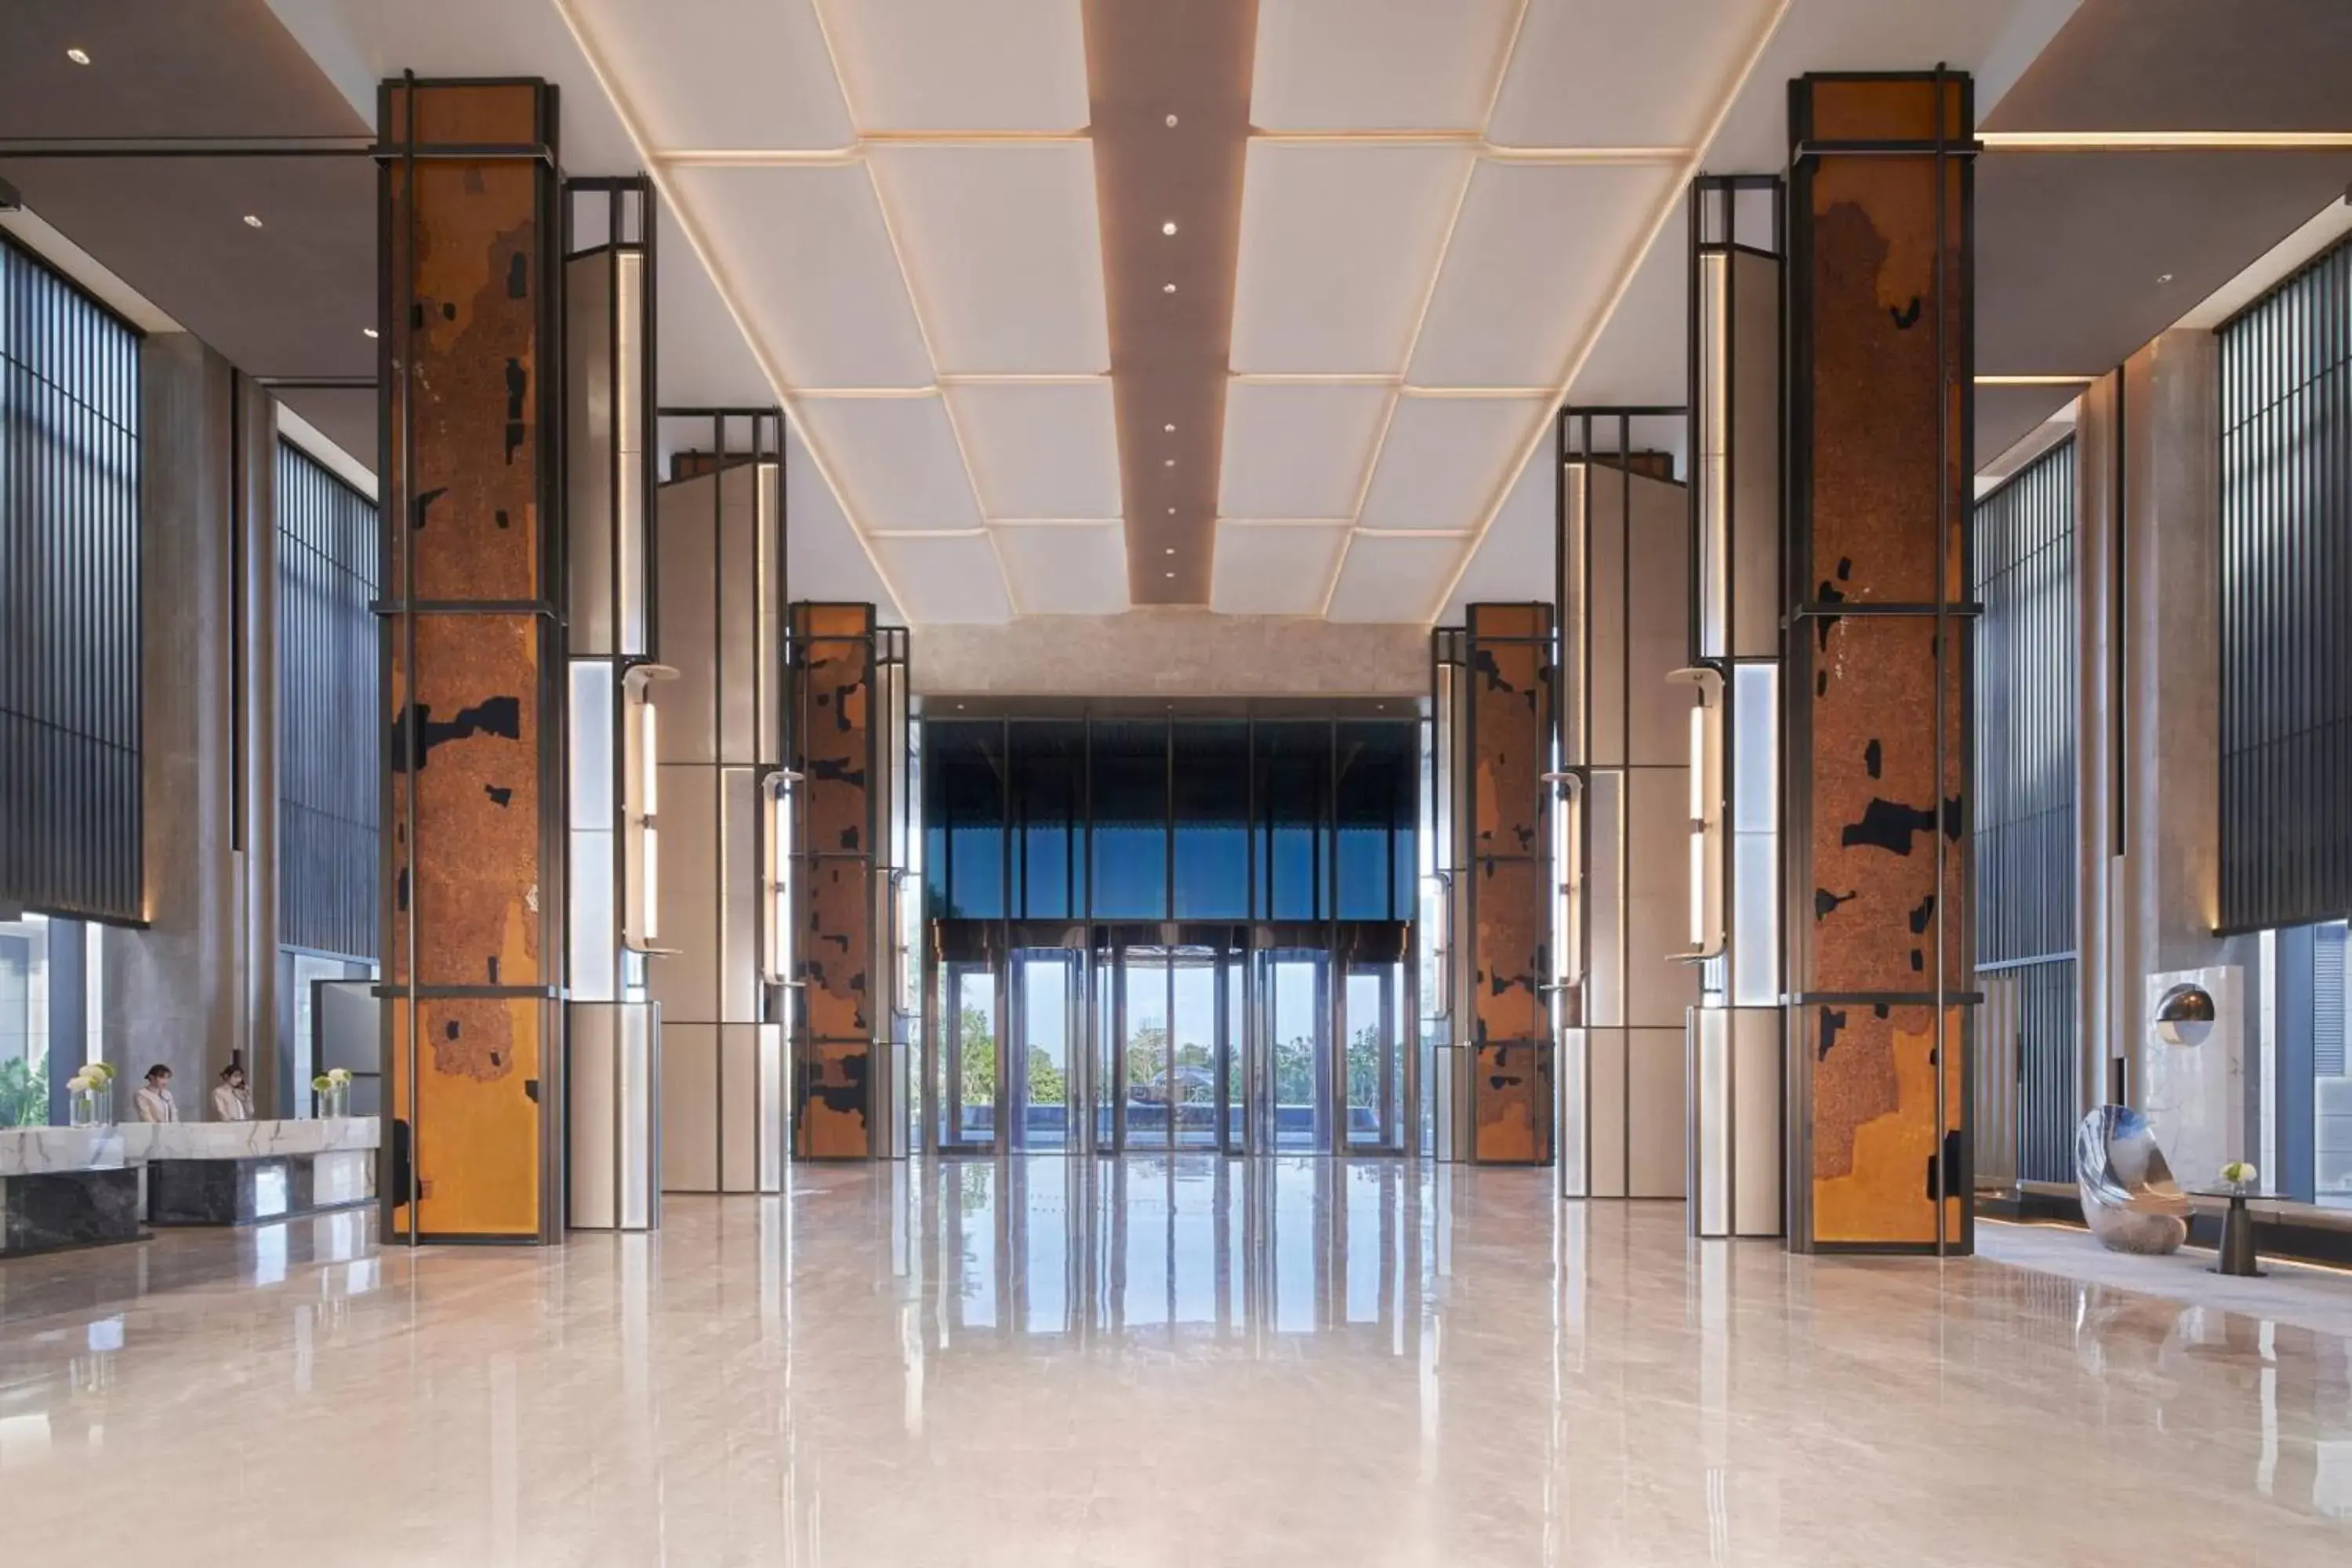 Lobby or reception in Fuzhou Marriott Hotel Riverside